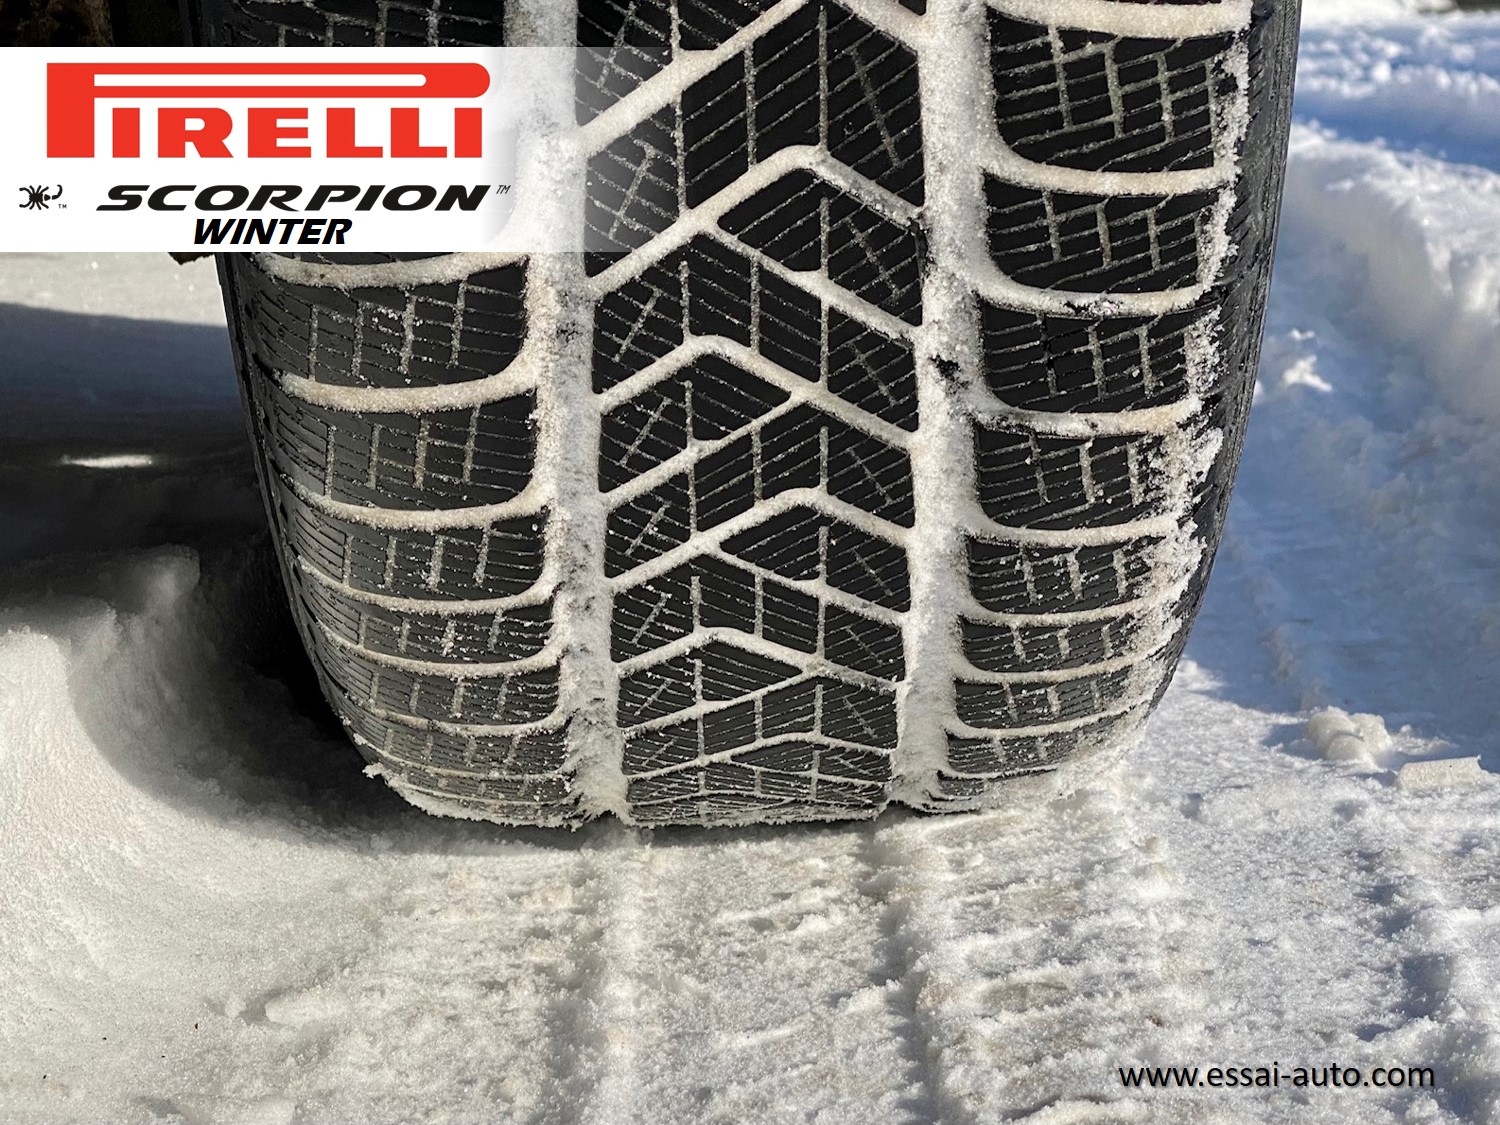 Essai pneu hiver Pirelli Scorpion winter